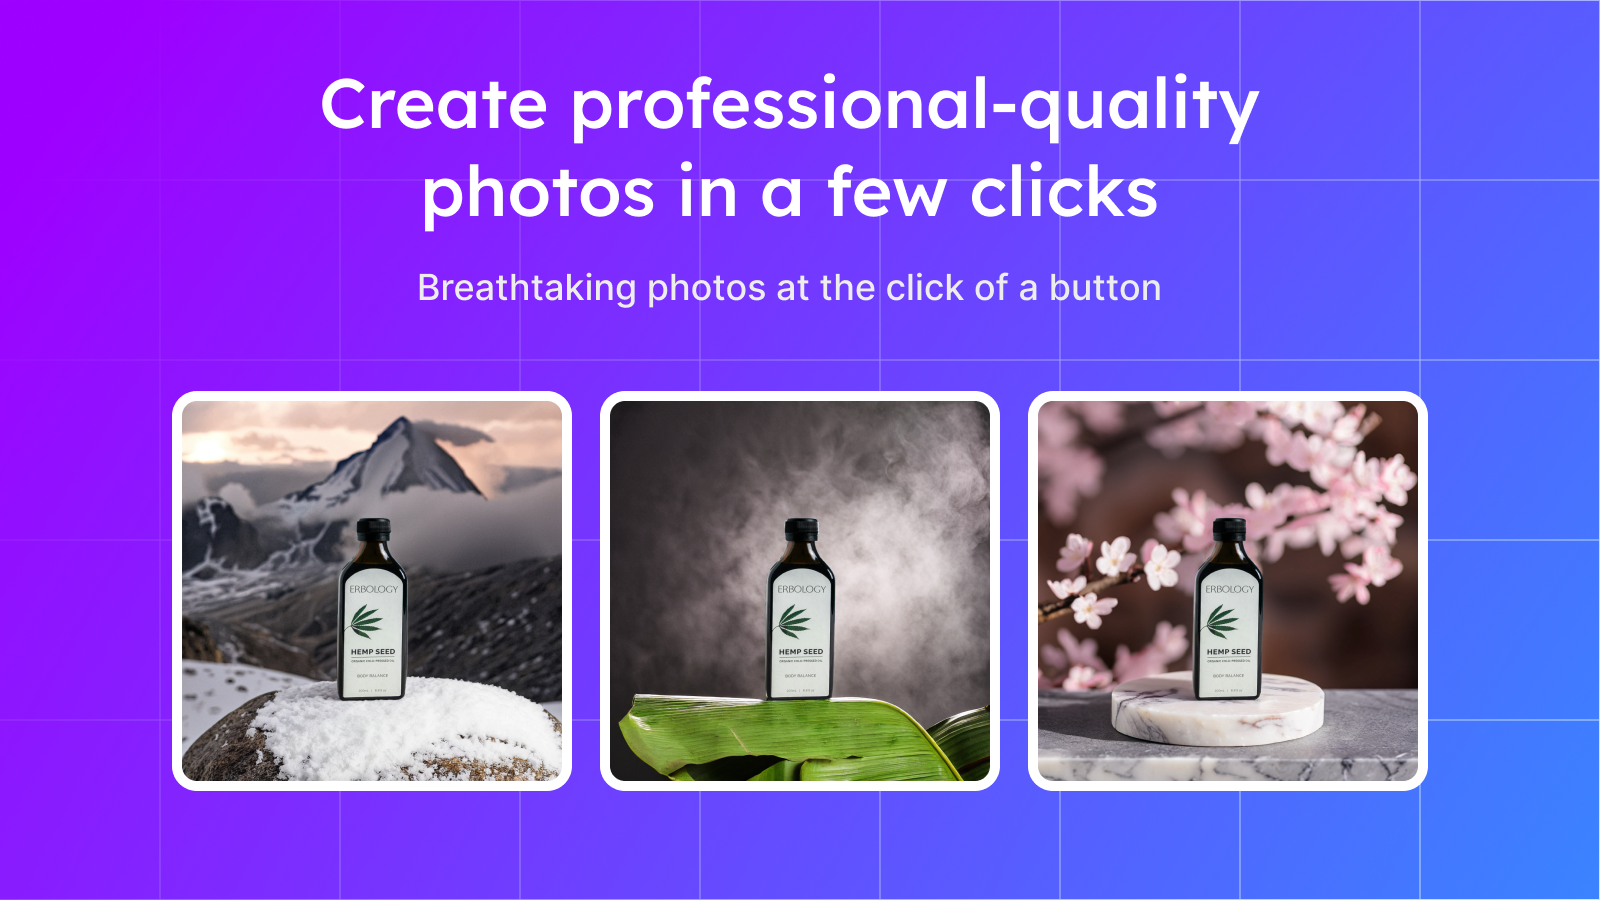 Crie instantaneamente fotos de produtos de qualidade profissional